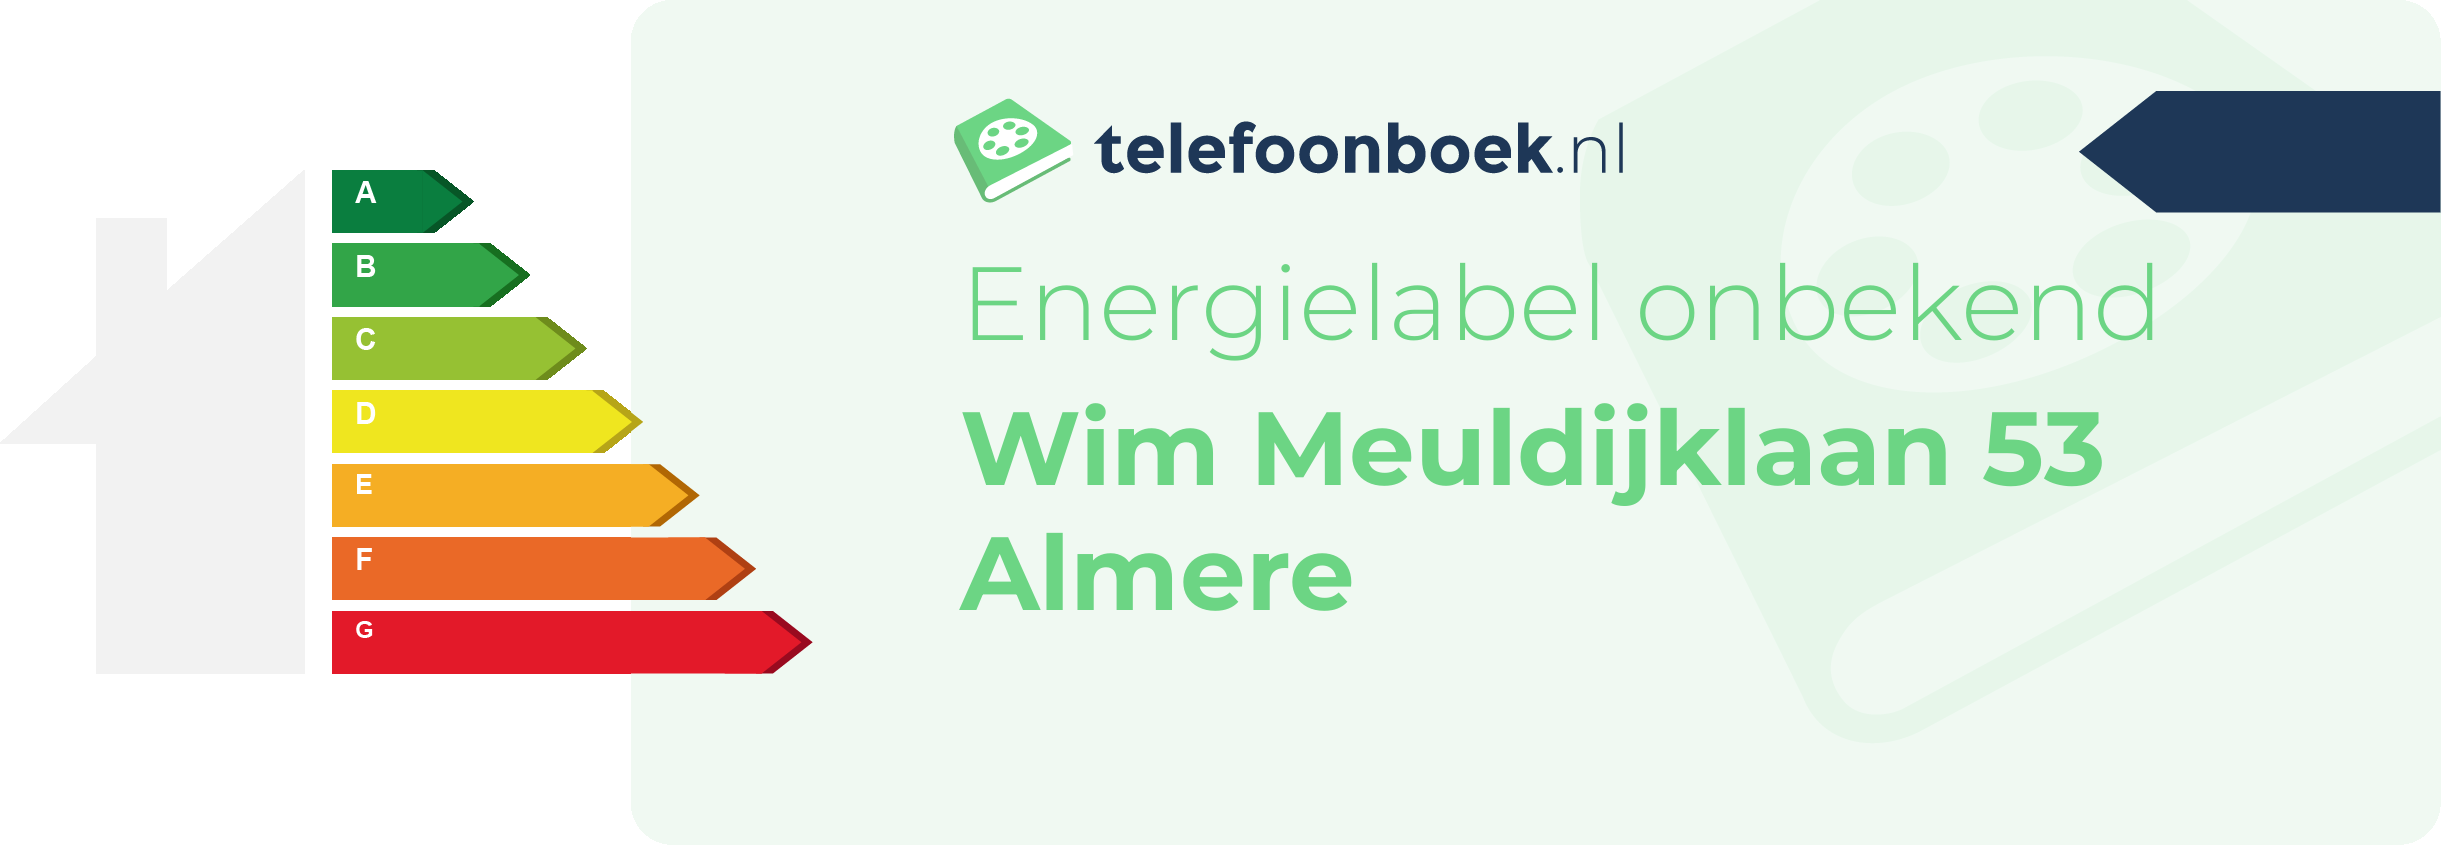 Energielabel Wim Meuldijklaan 53 Almere